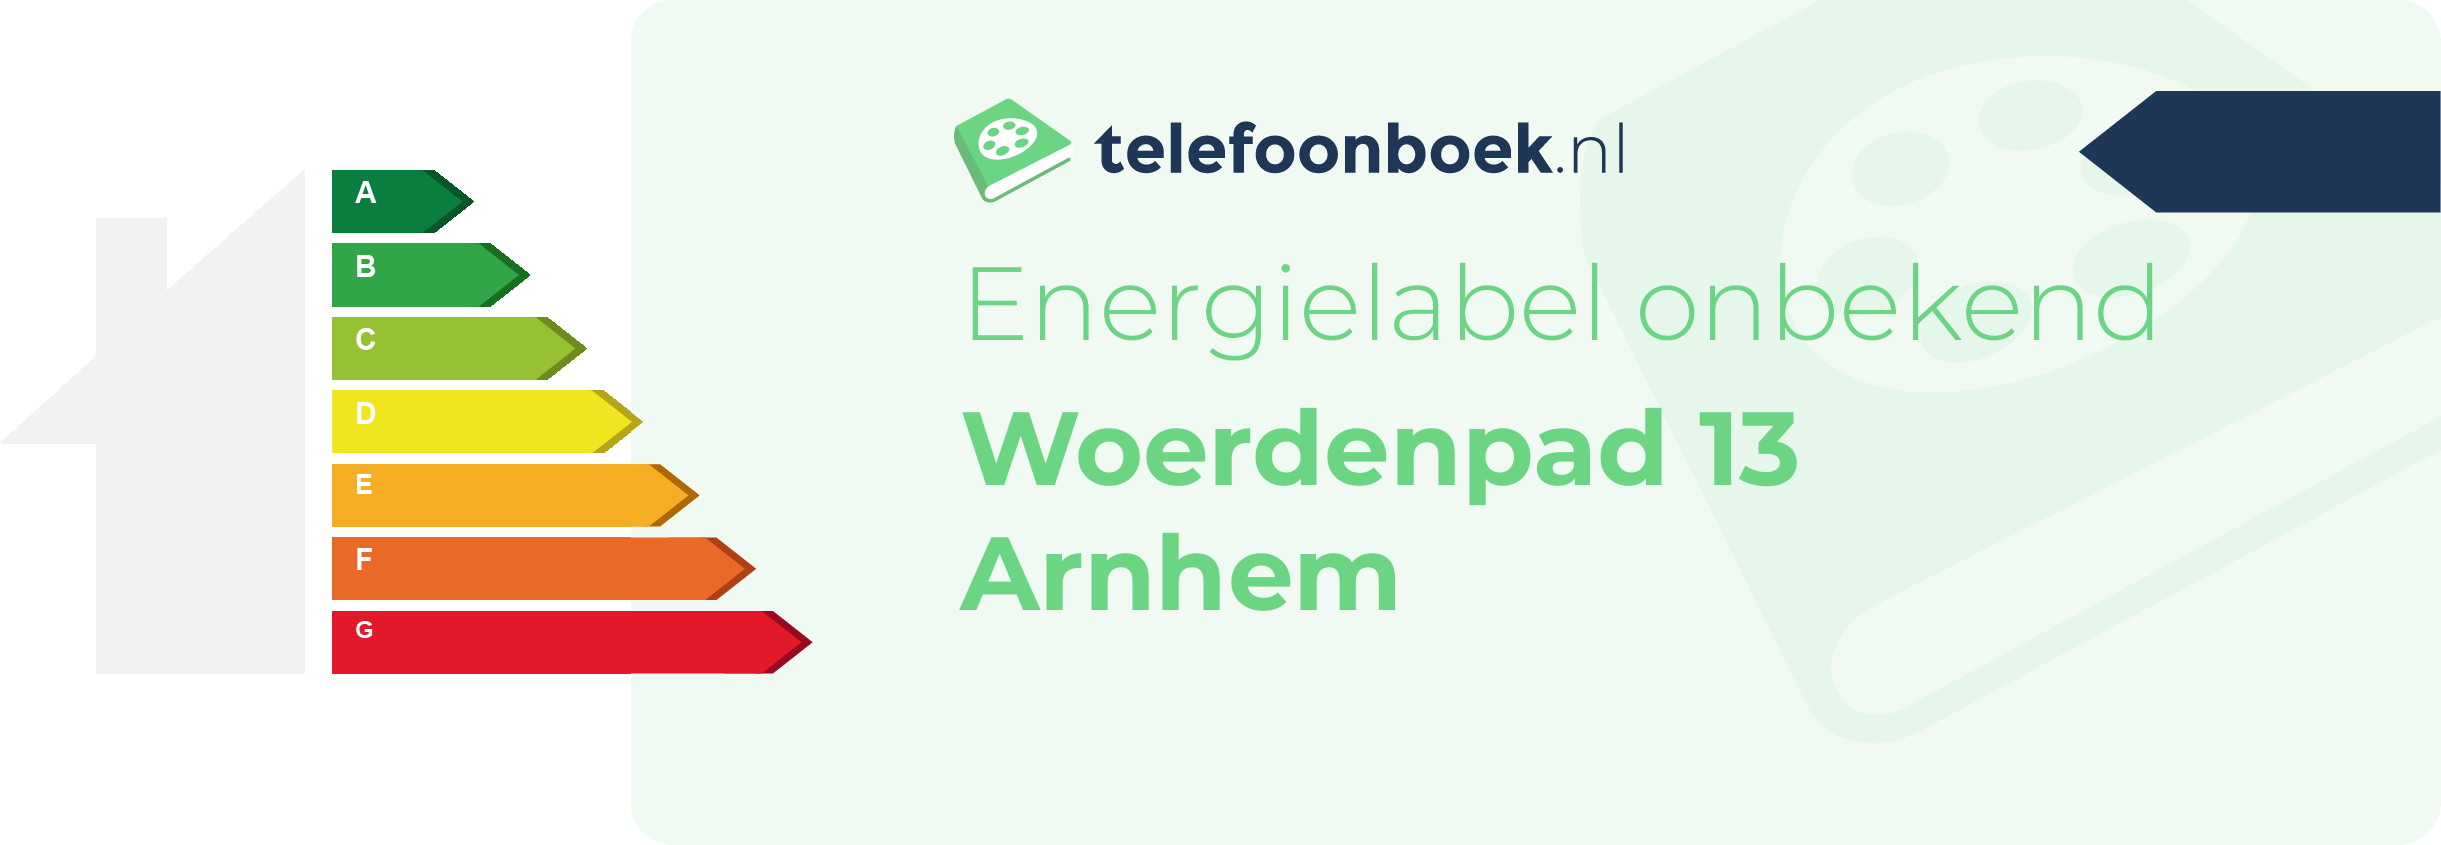 Energielabel Woerdenpad 13 Arnhem